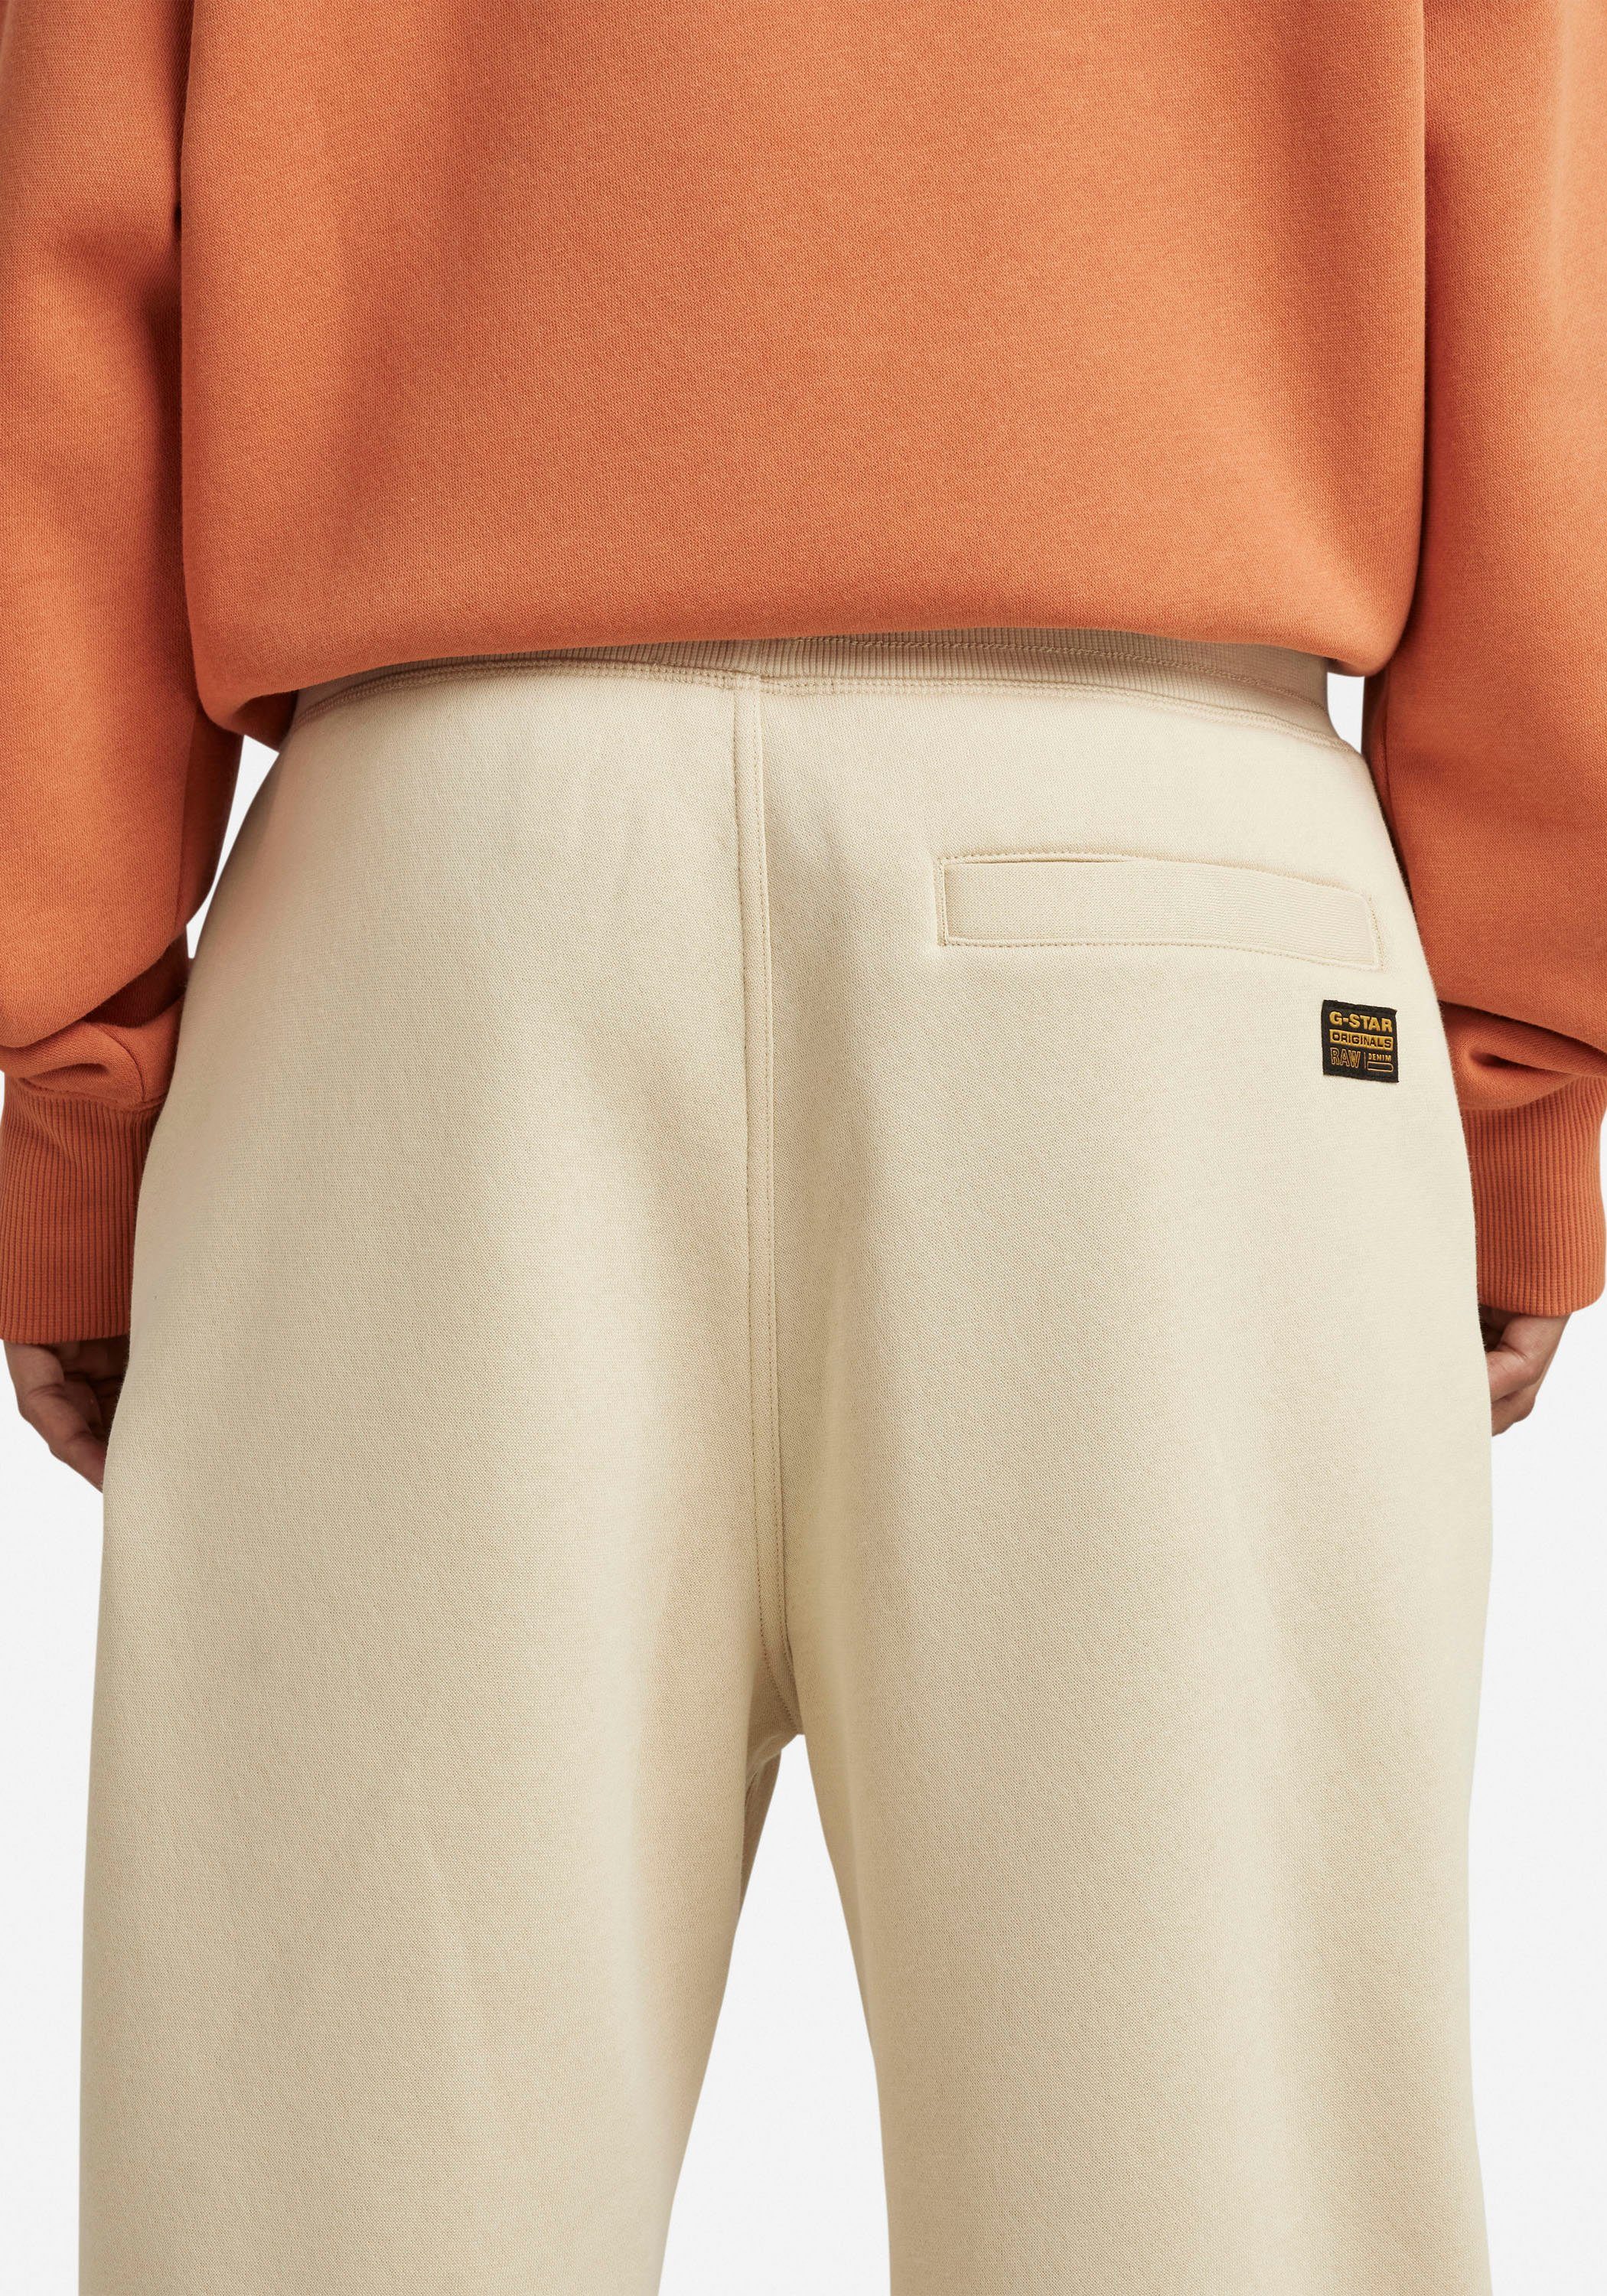 und Tunnelzug brown 2.0 core mit rice Sweatpants RAW Premium G-Star Bund Sweathose elastischen